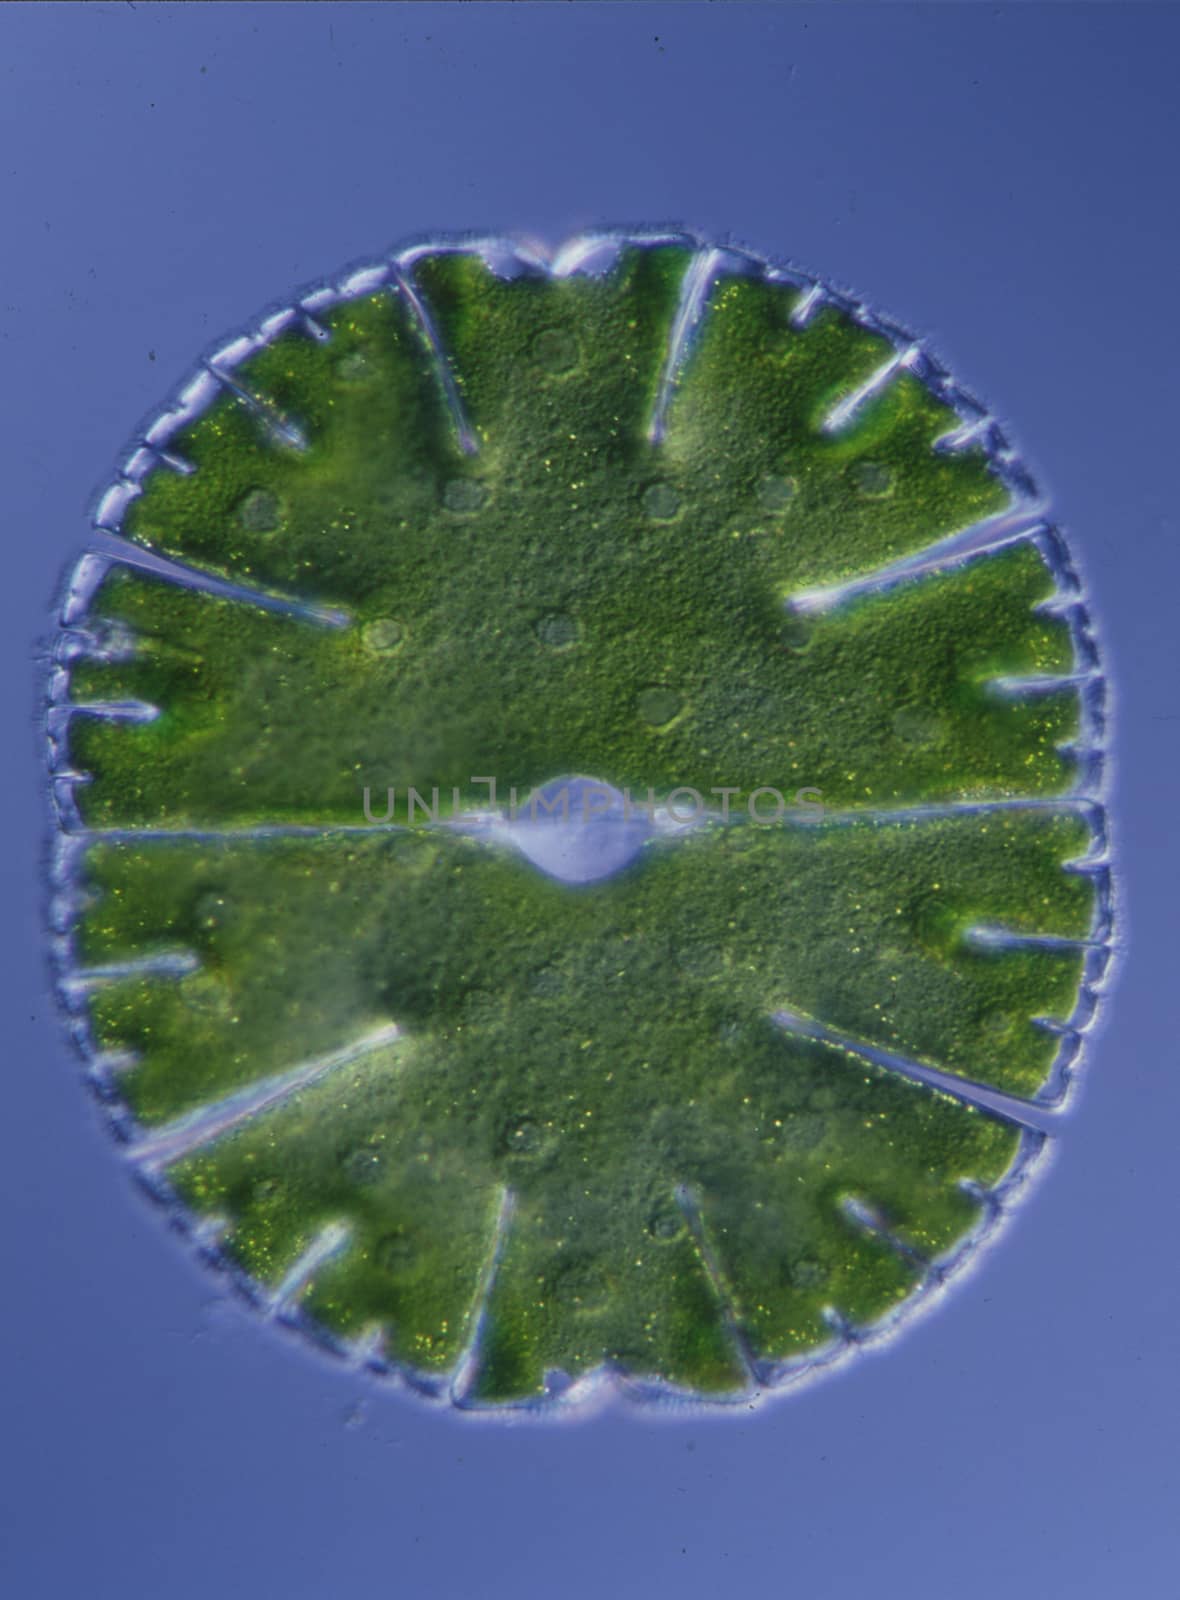 Ornamental algae Micrasterias in drops of water 100x by Dr-Lange